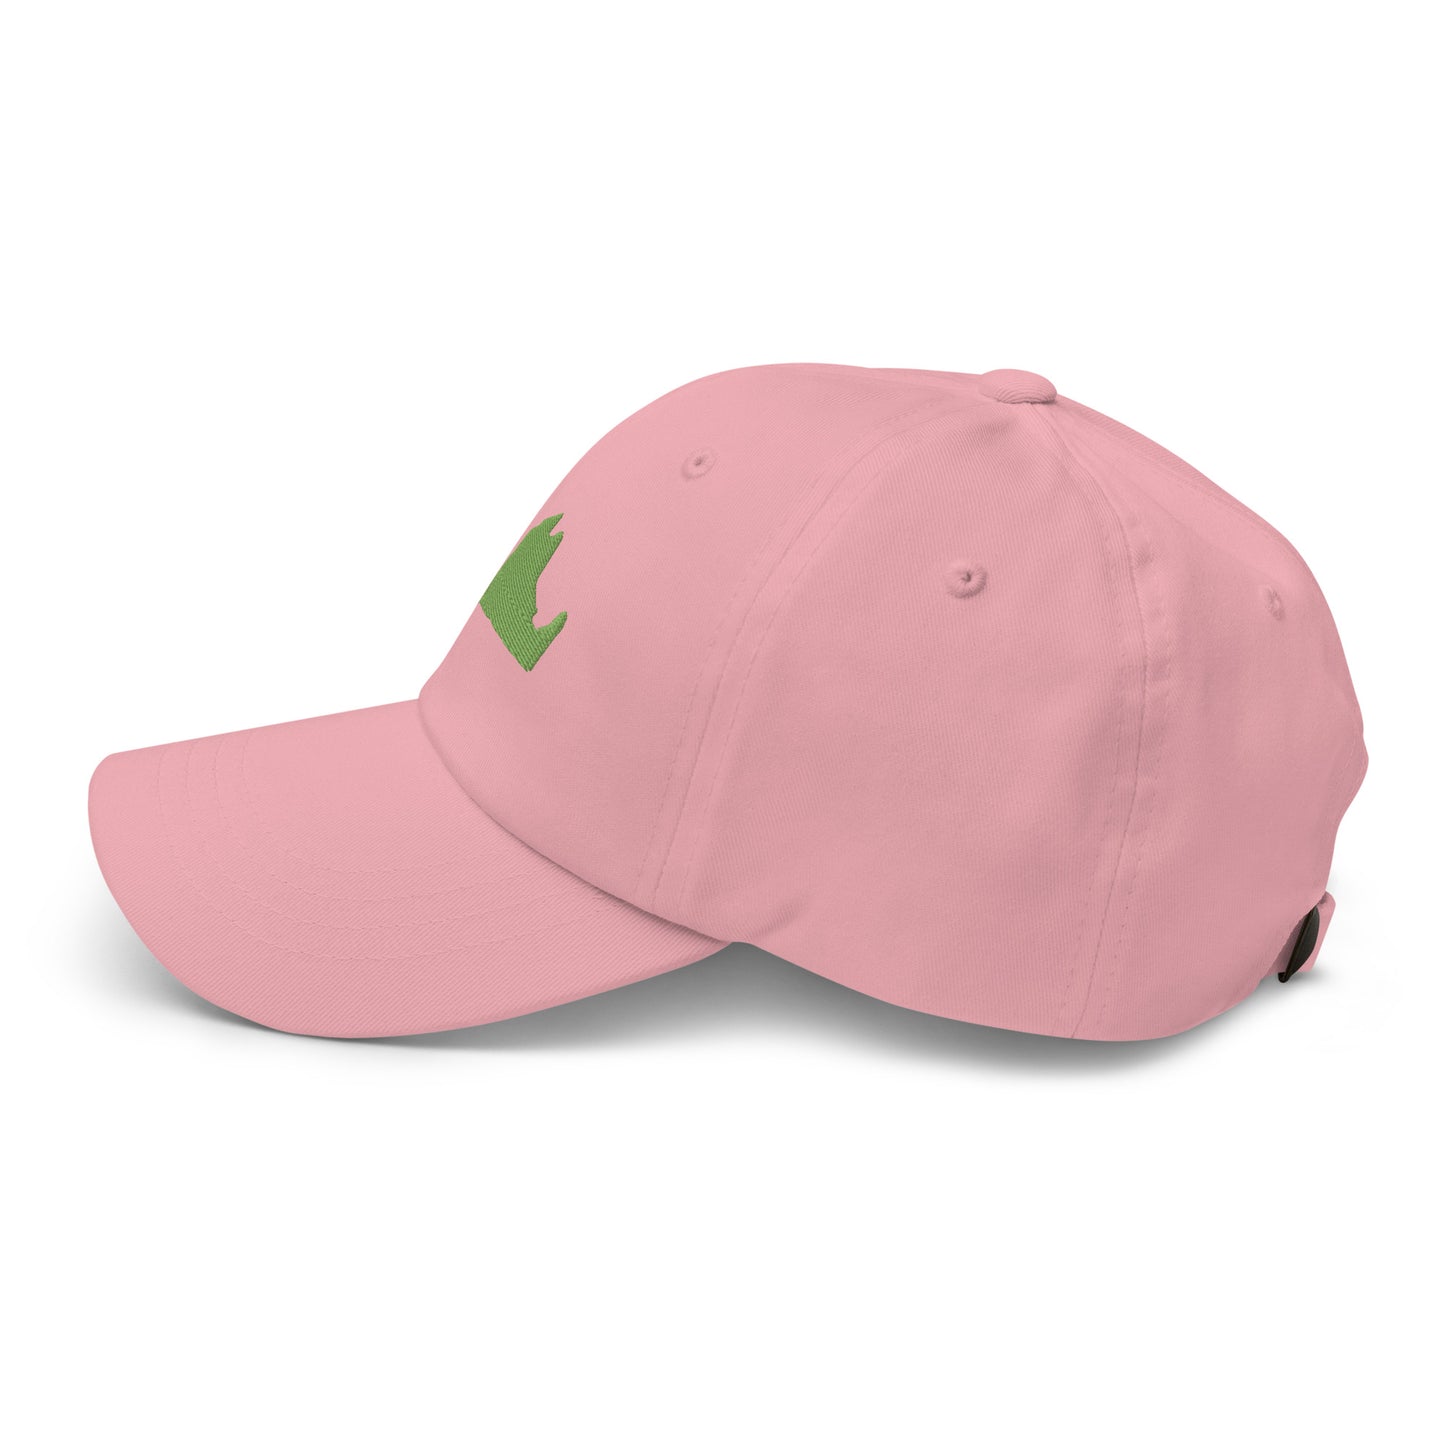 Martha's Vineyard Dad Hat - Green on Pink